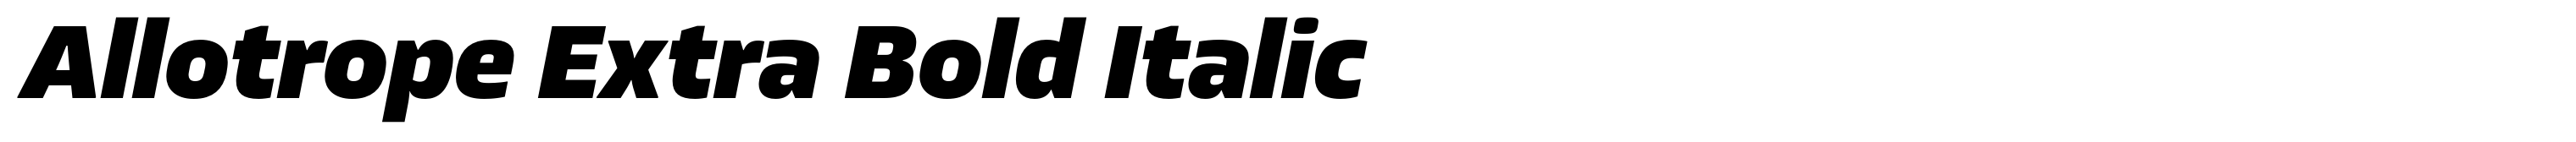 Allotrope Extra Bold Italic